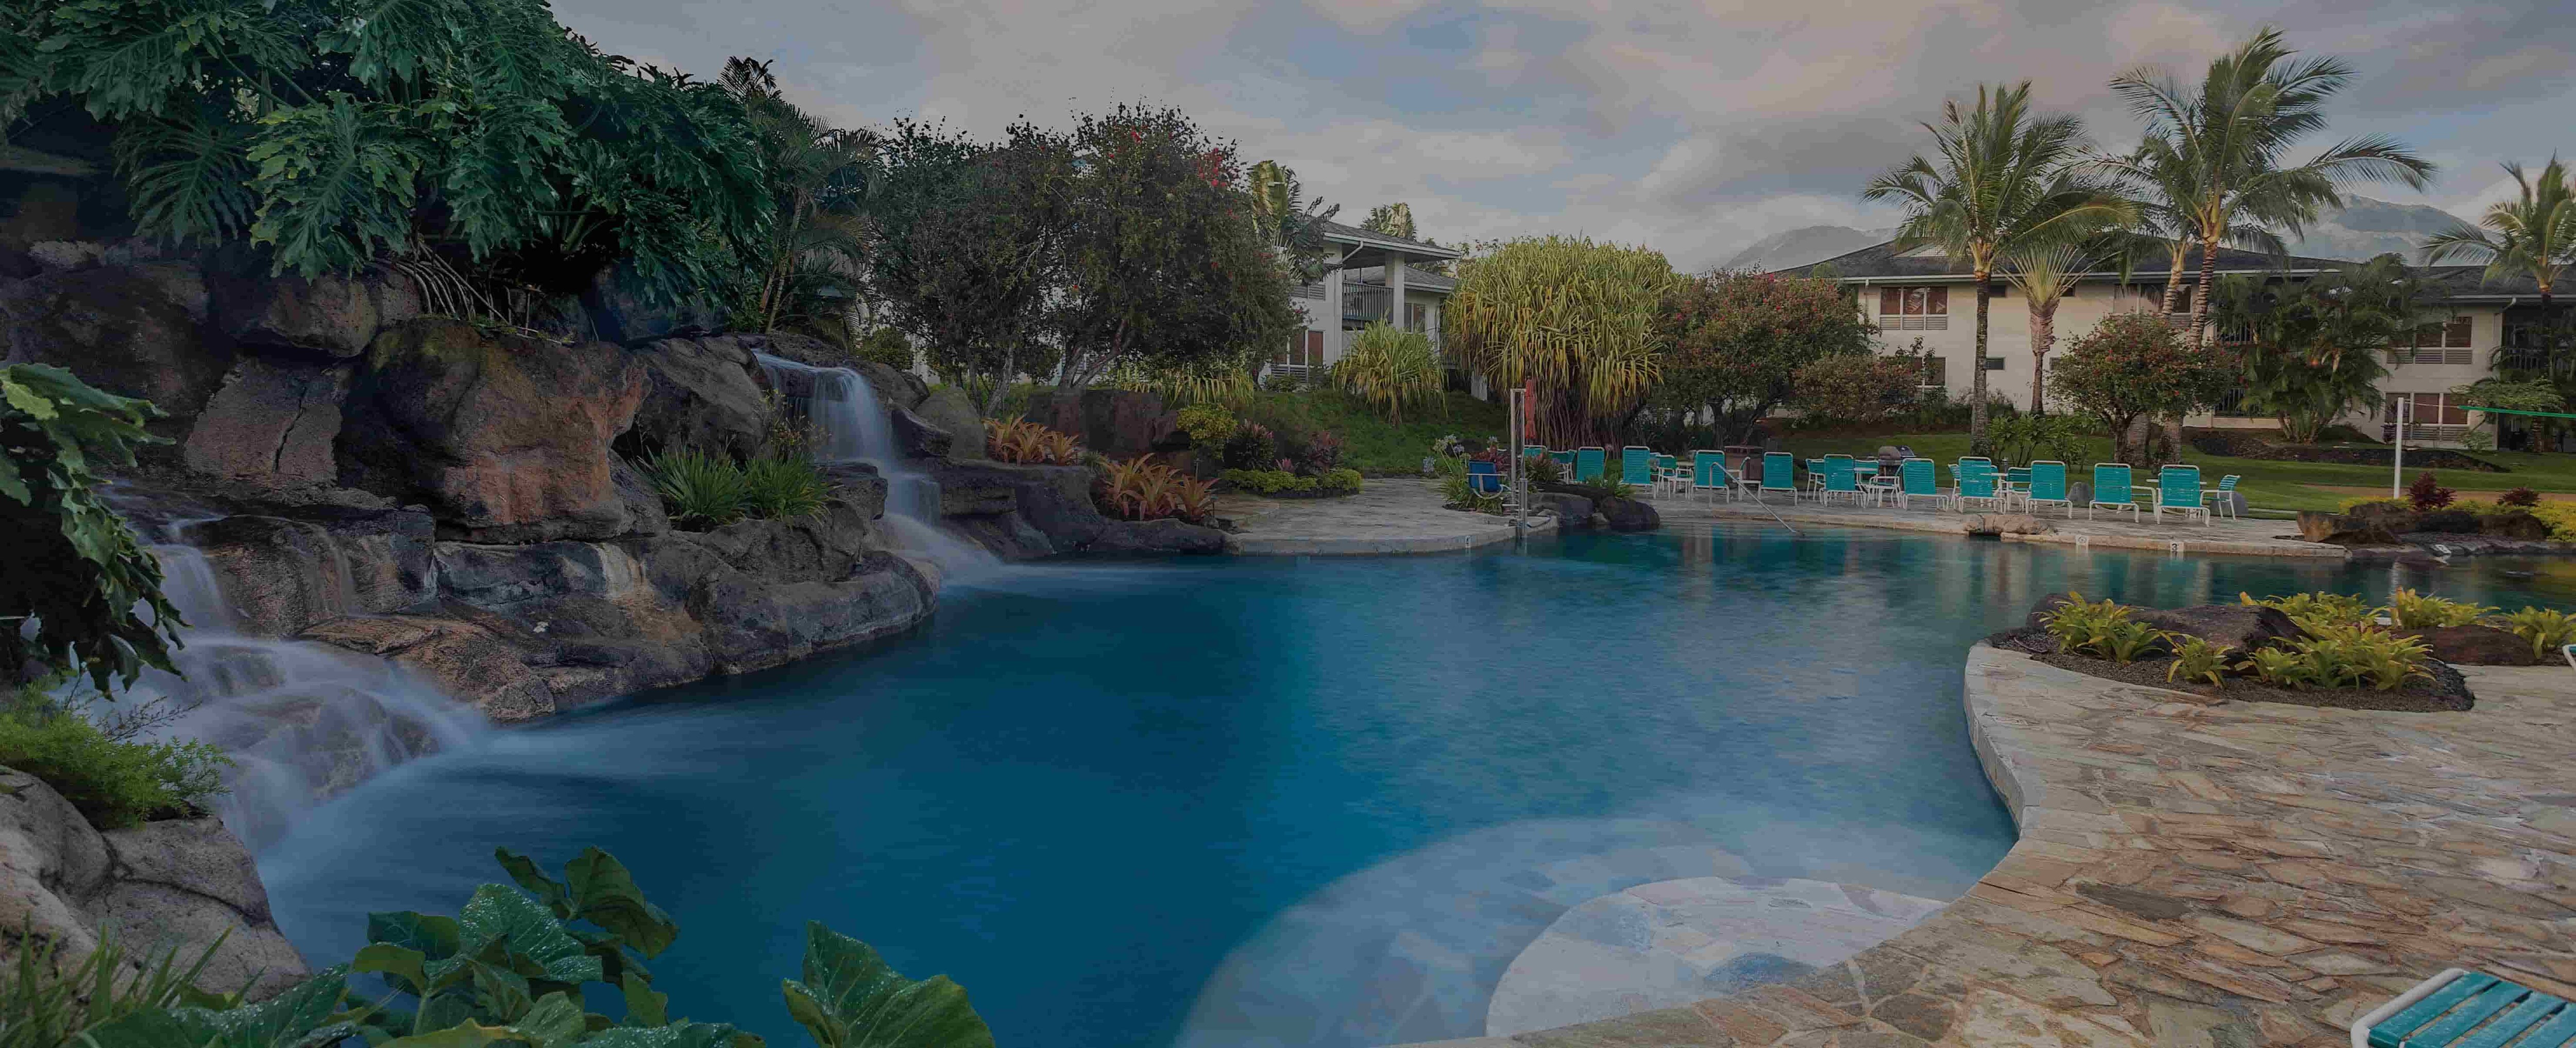 The Club Wyndham Bali Hai Villas resort pool. 